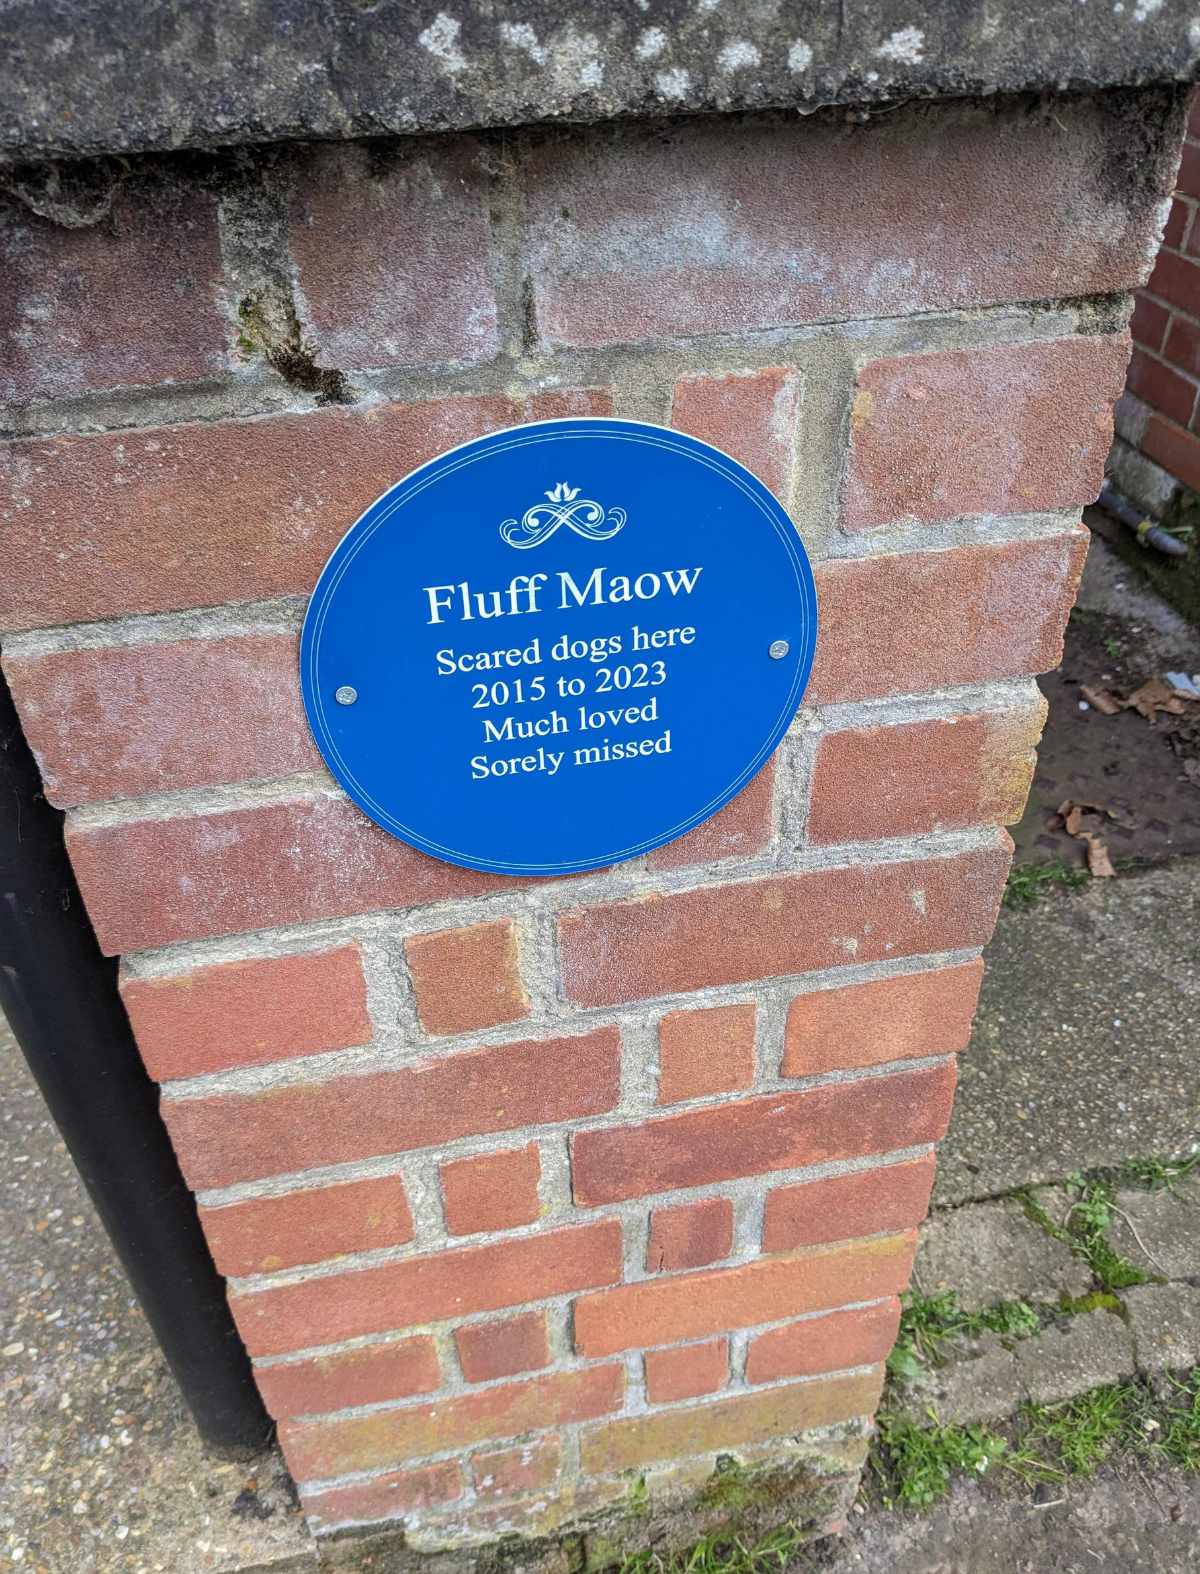 This plaque